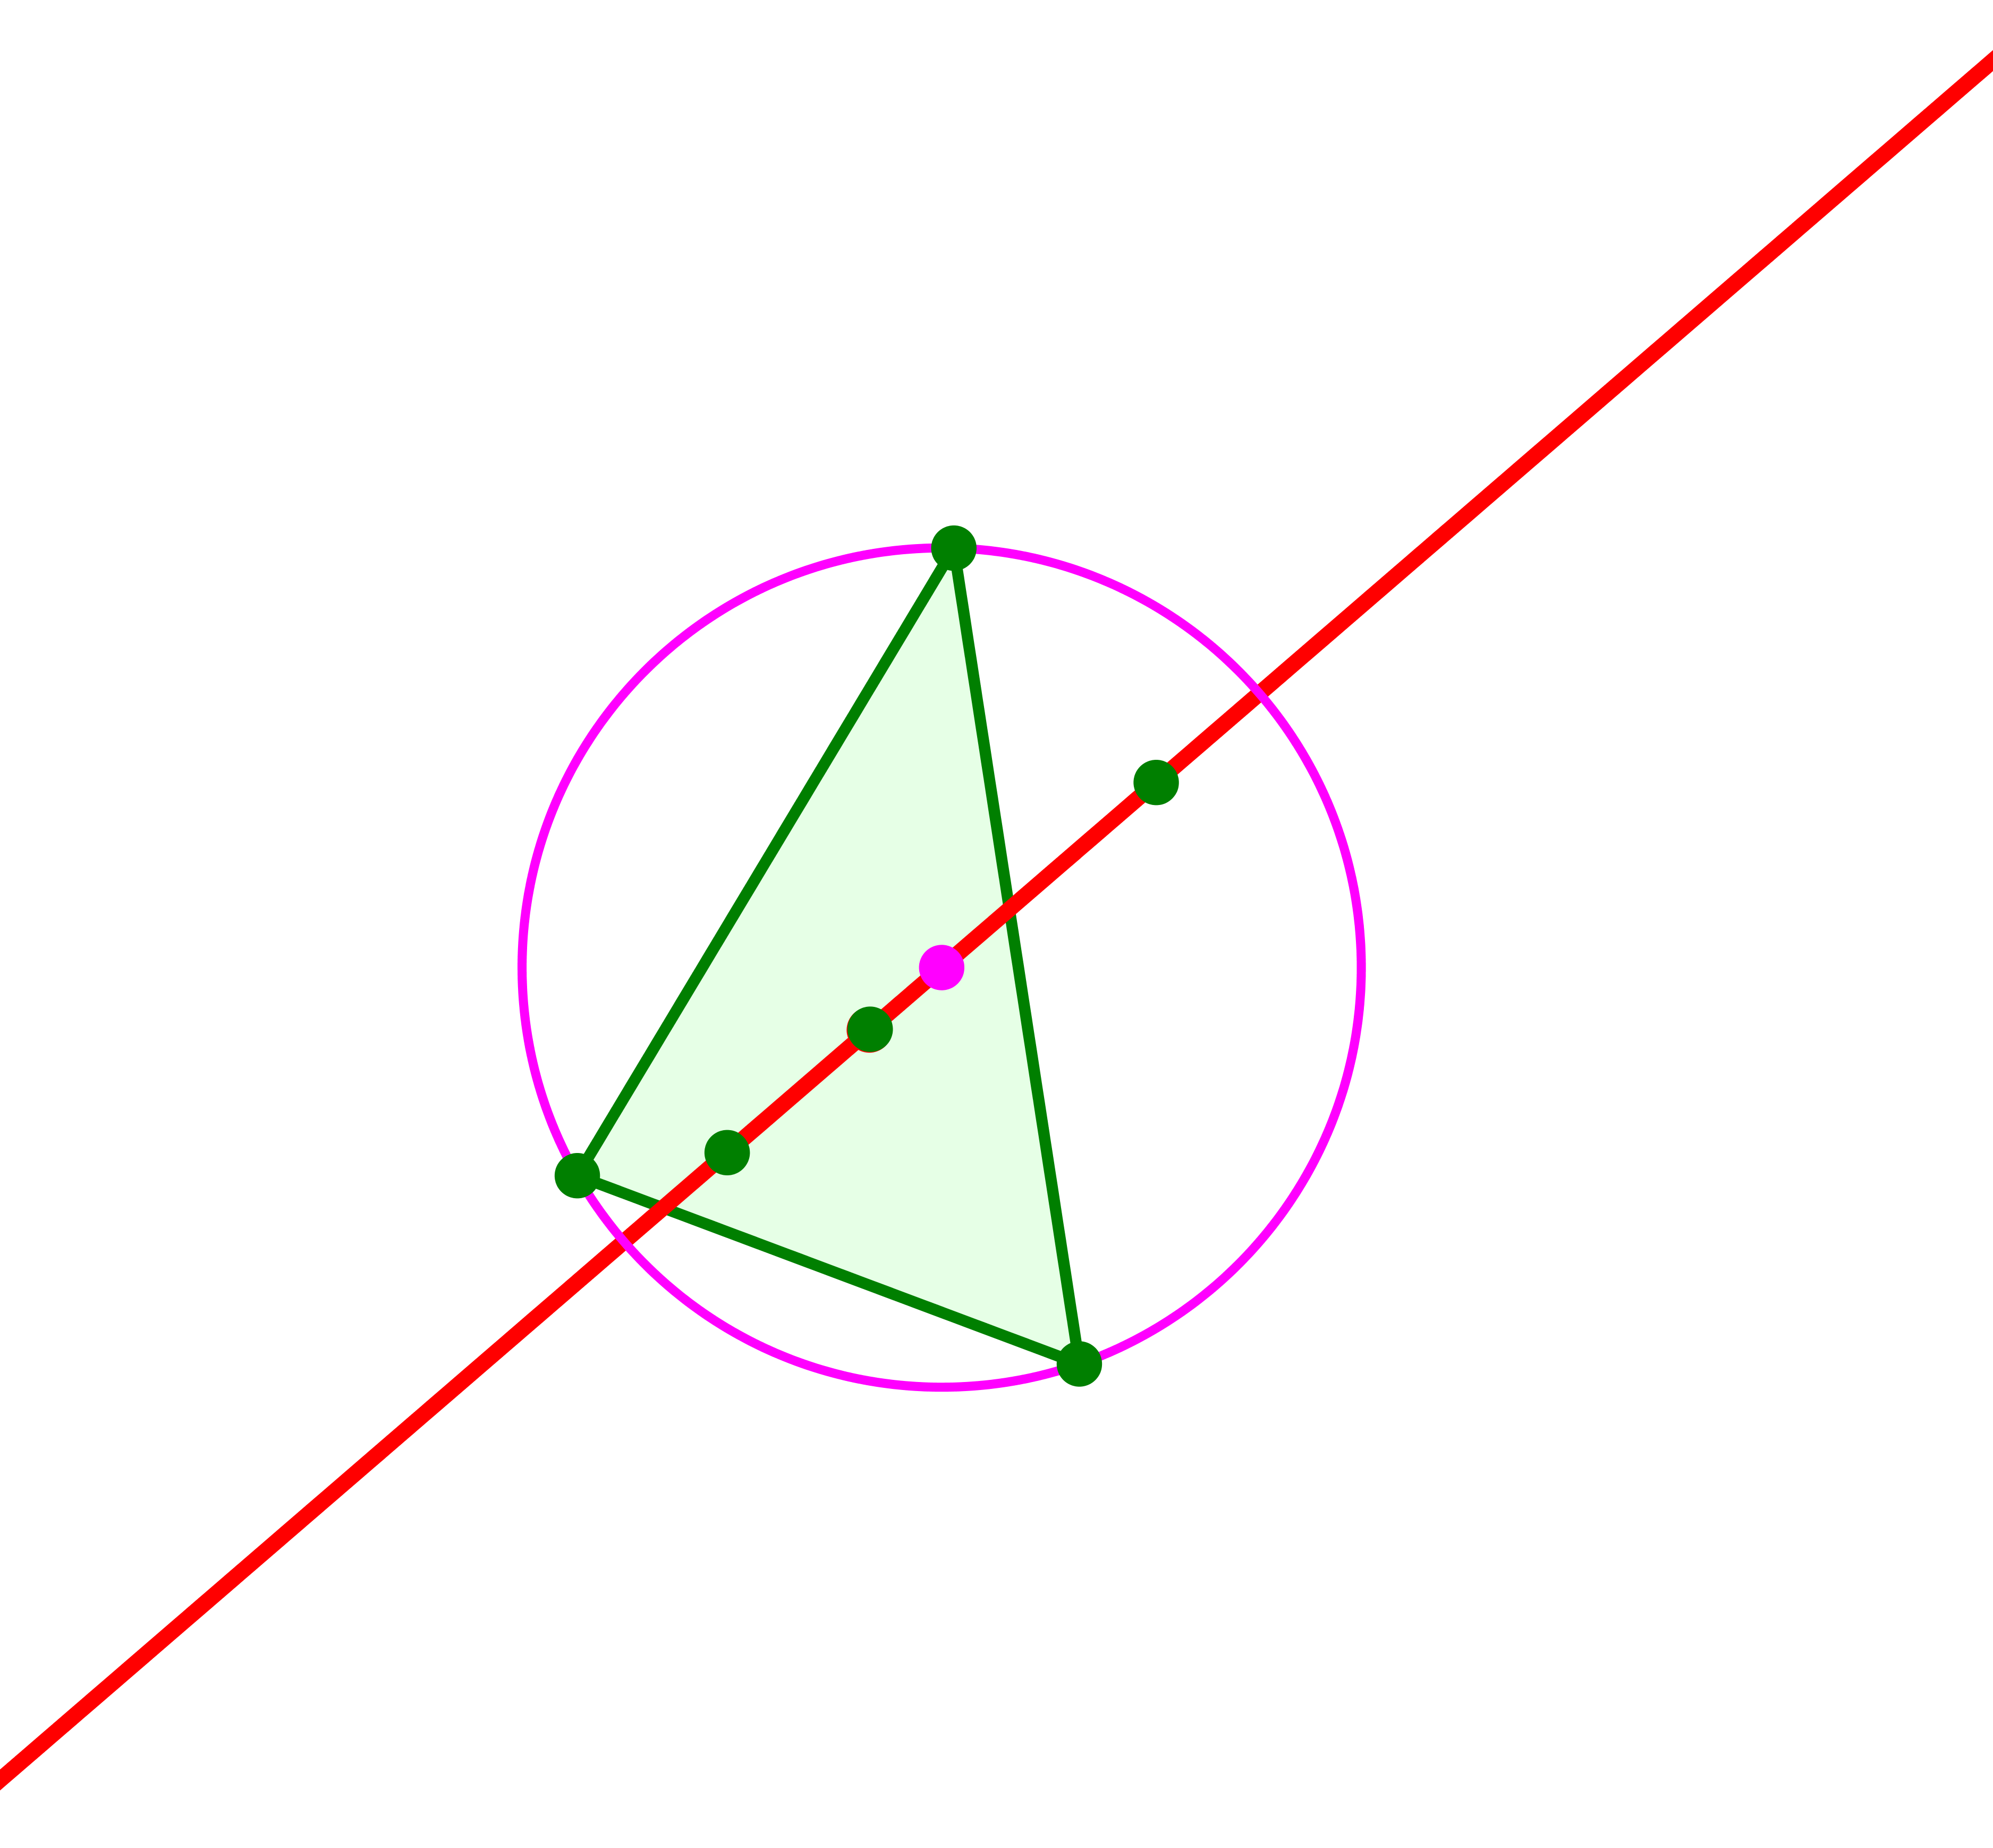 Ein Bild, das Laser enthält.

Automatisch generierte Beschreibung